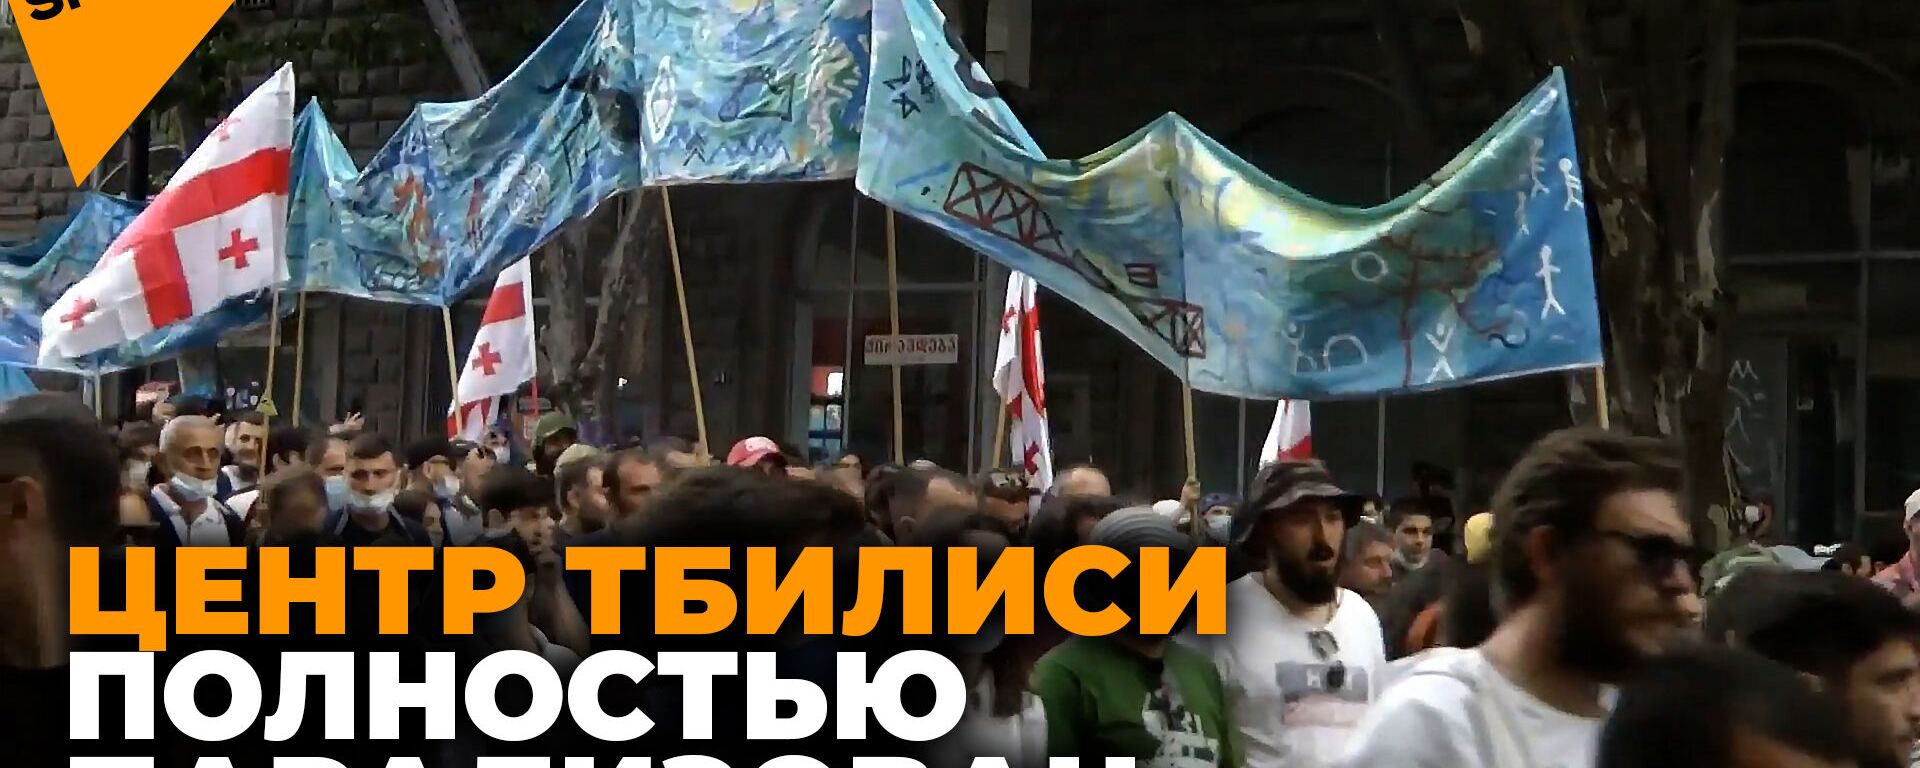 Протесты в Грузии против ГЭС Намахвани: улицы Тбилиси перекрыты - Sputnik Латвия, 1920, 27.05.2021